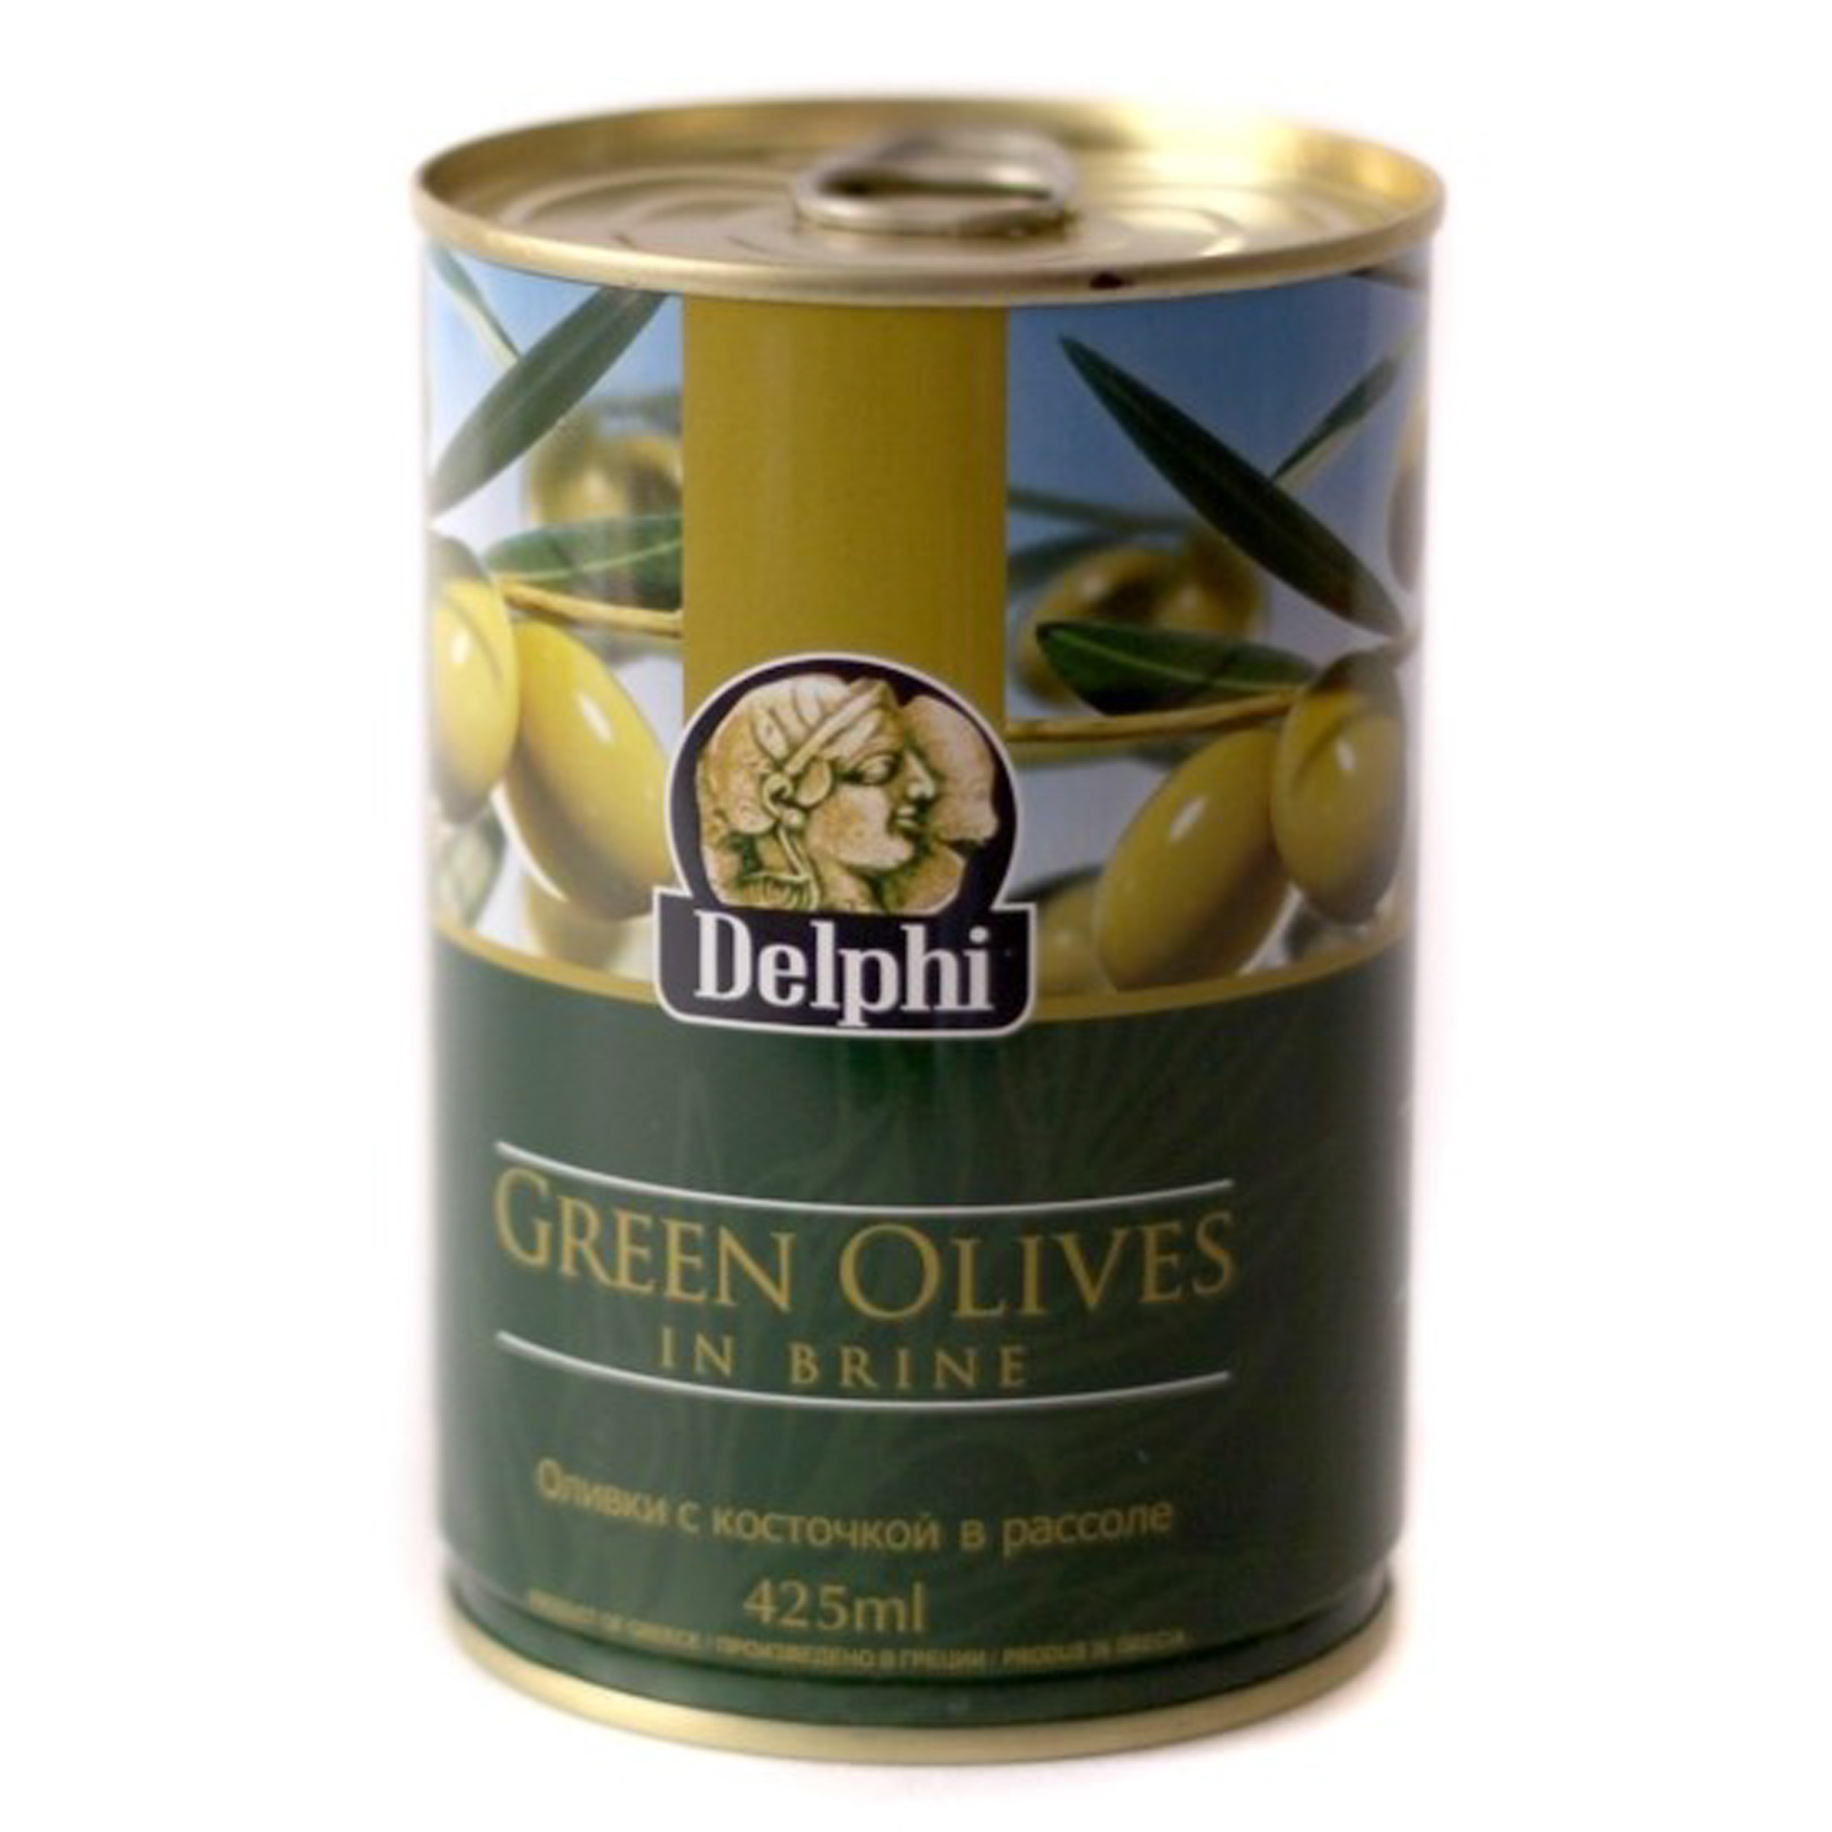 Оливки Delphi с косточкой 420 г оливки с косточкой колоссал в рассоле delphi греция 350г